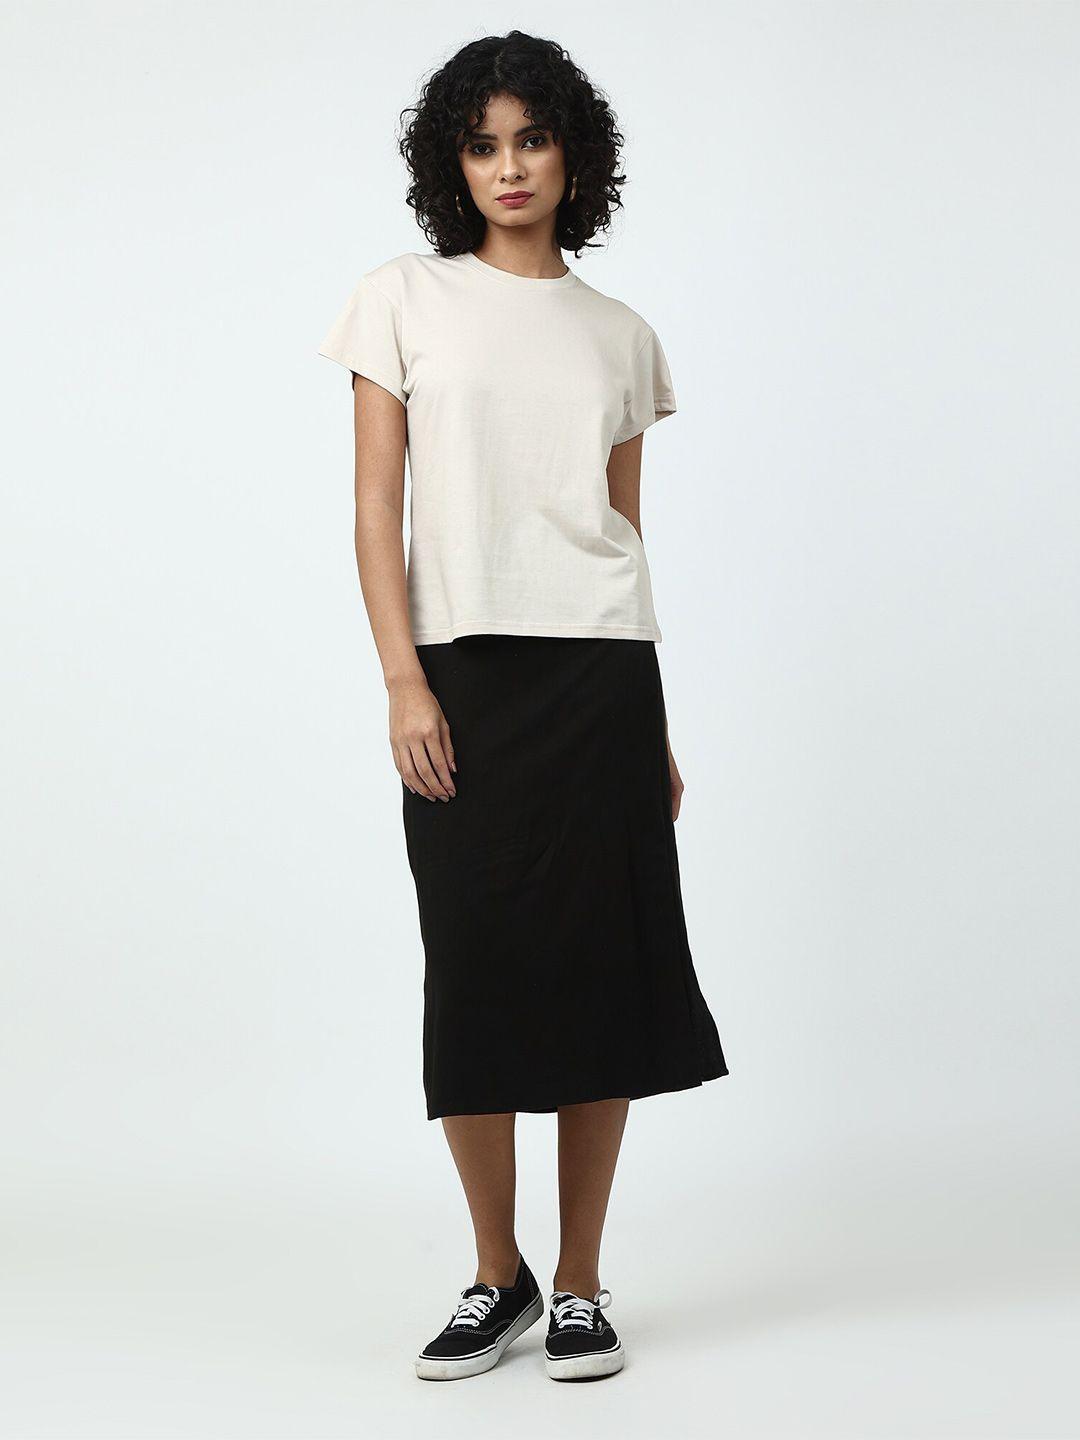 saltpetre-organic-cotton-t-shirt-with-skirt